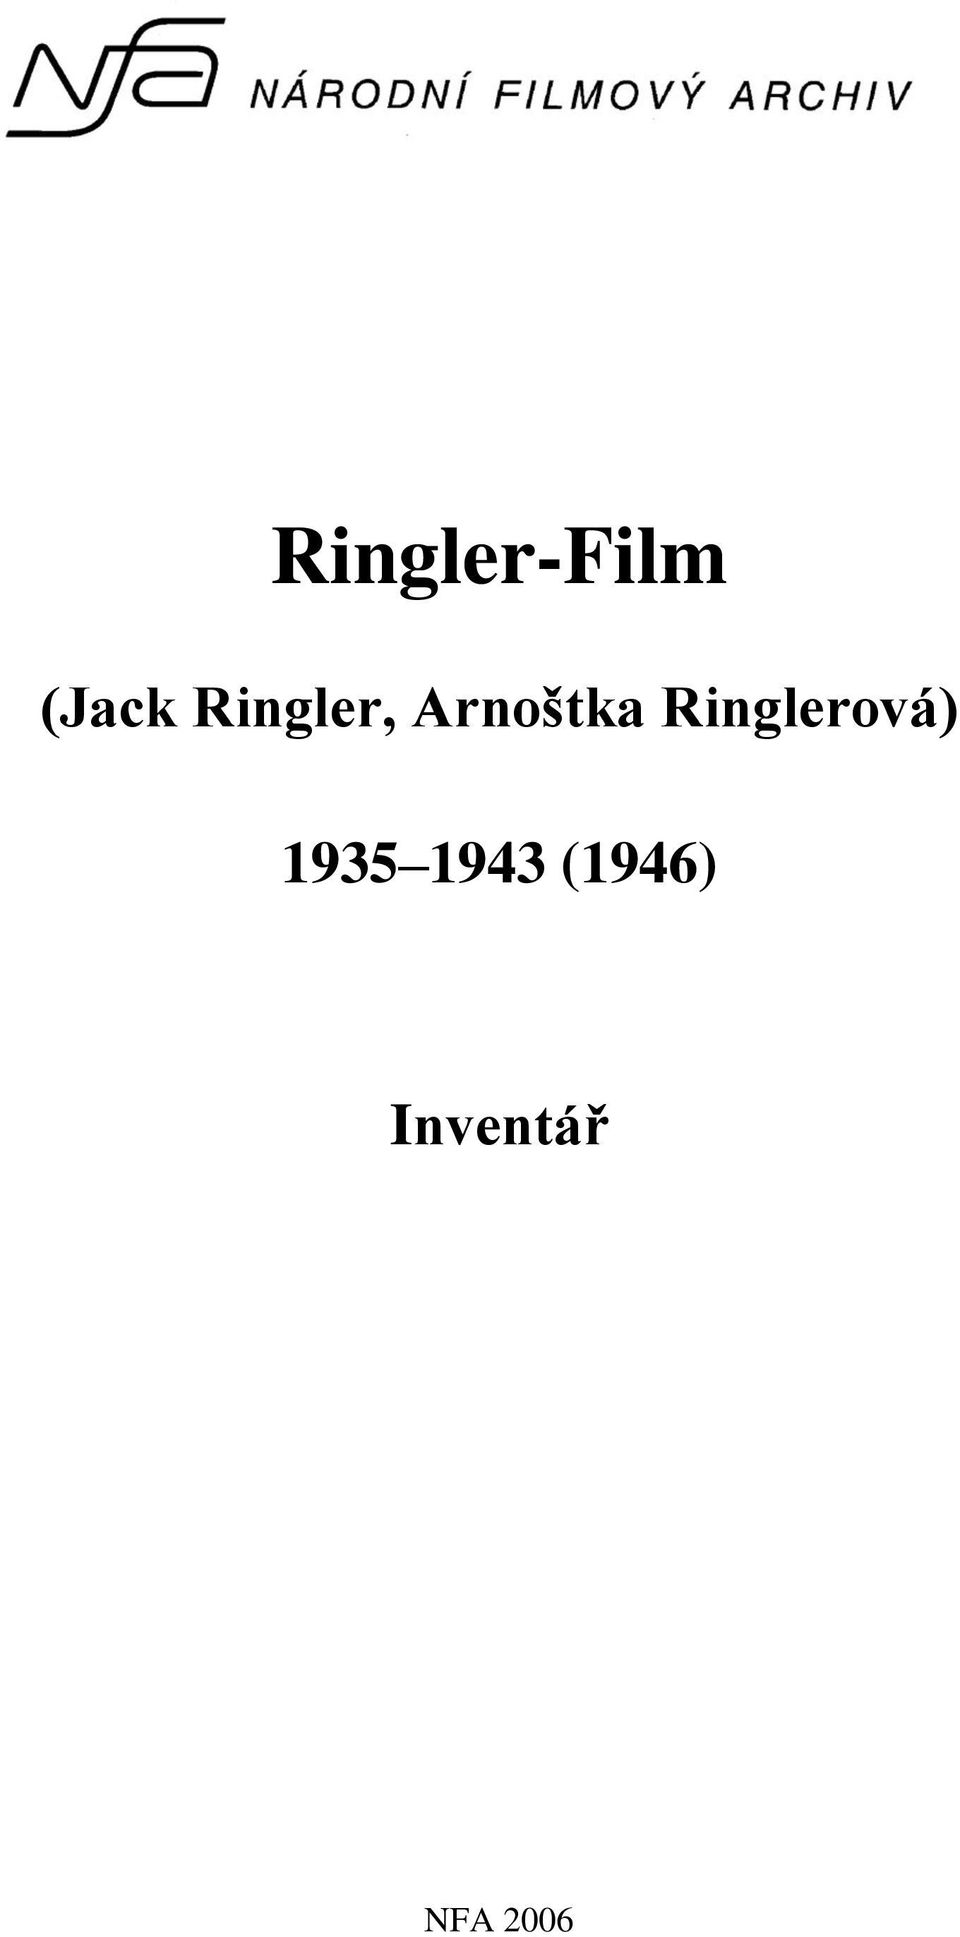 Ringlerová) 1935